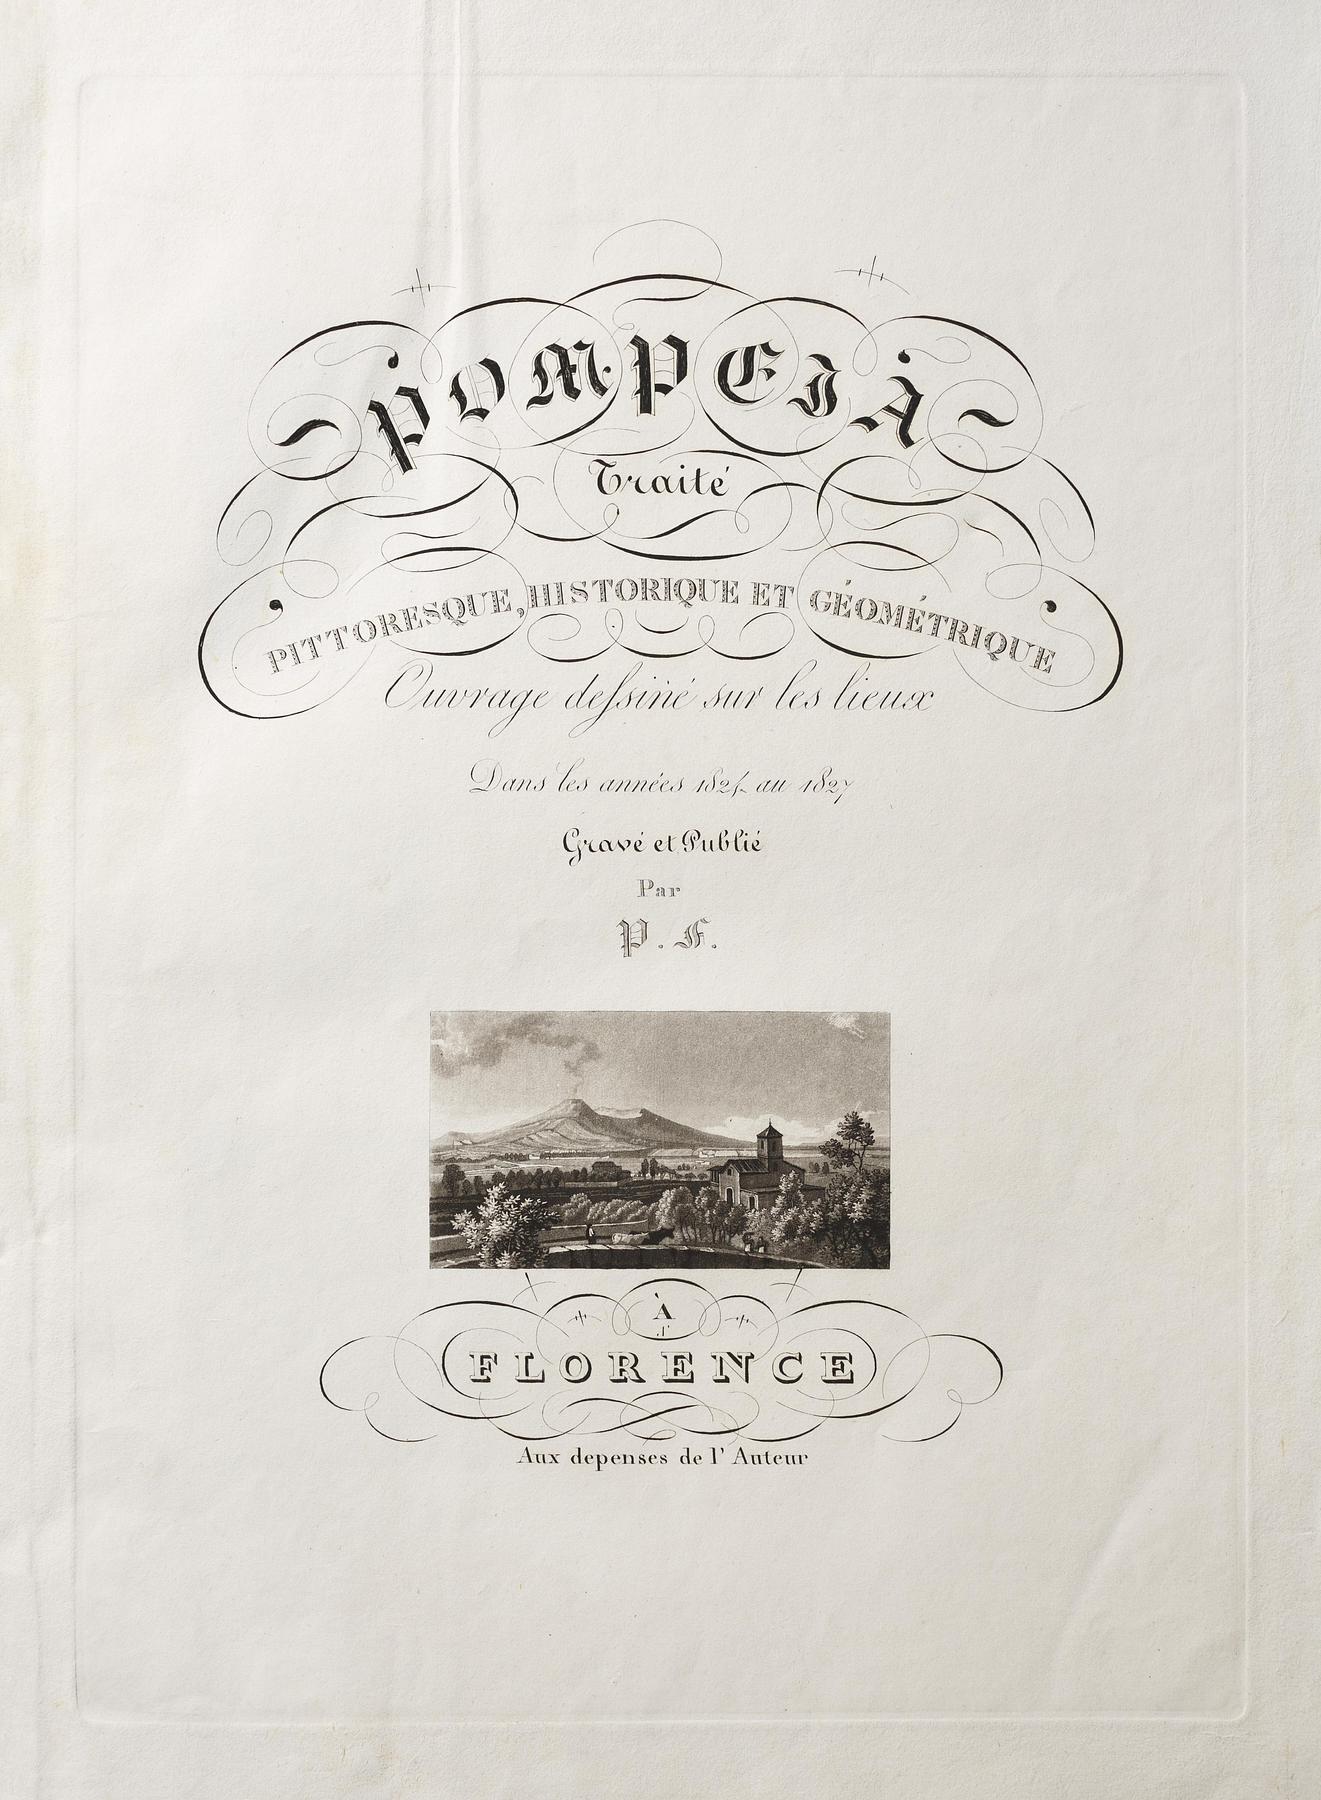 Pompeia Traité Pittoresque, historique et géométrique, E550,1